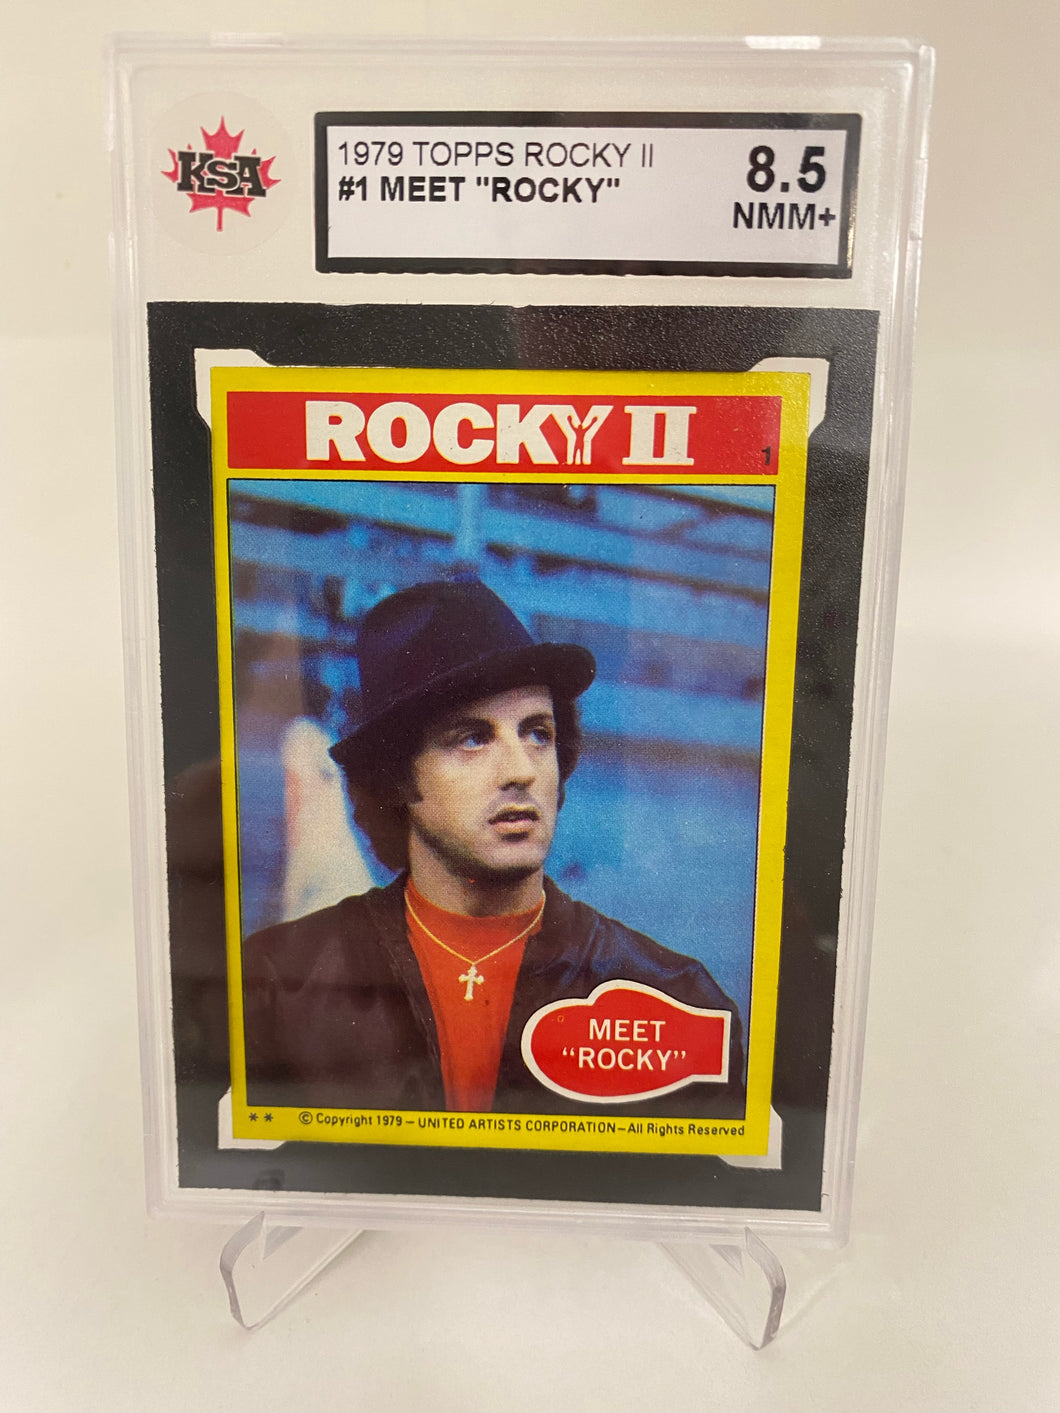 1979 Topps Rocky II #1 Meet 